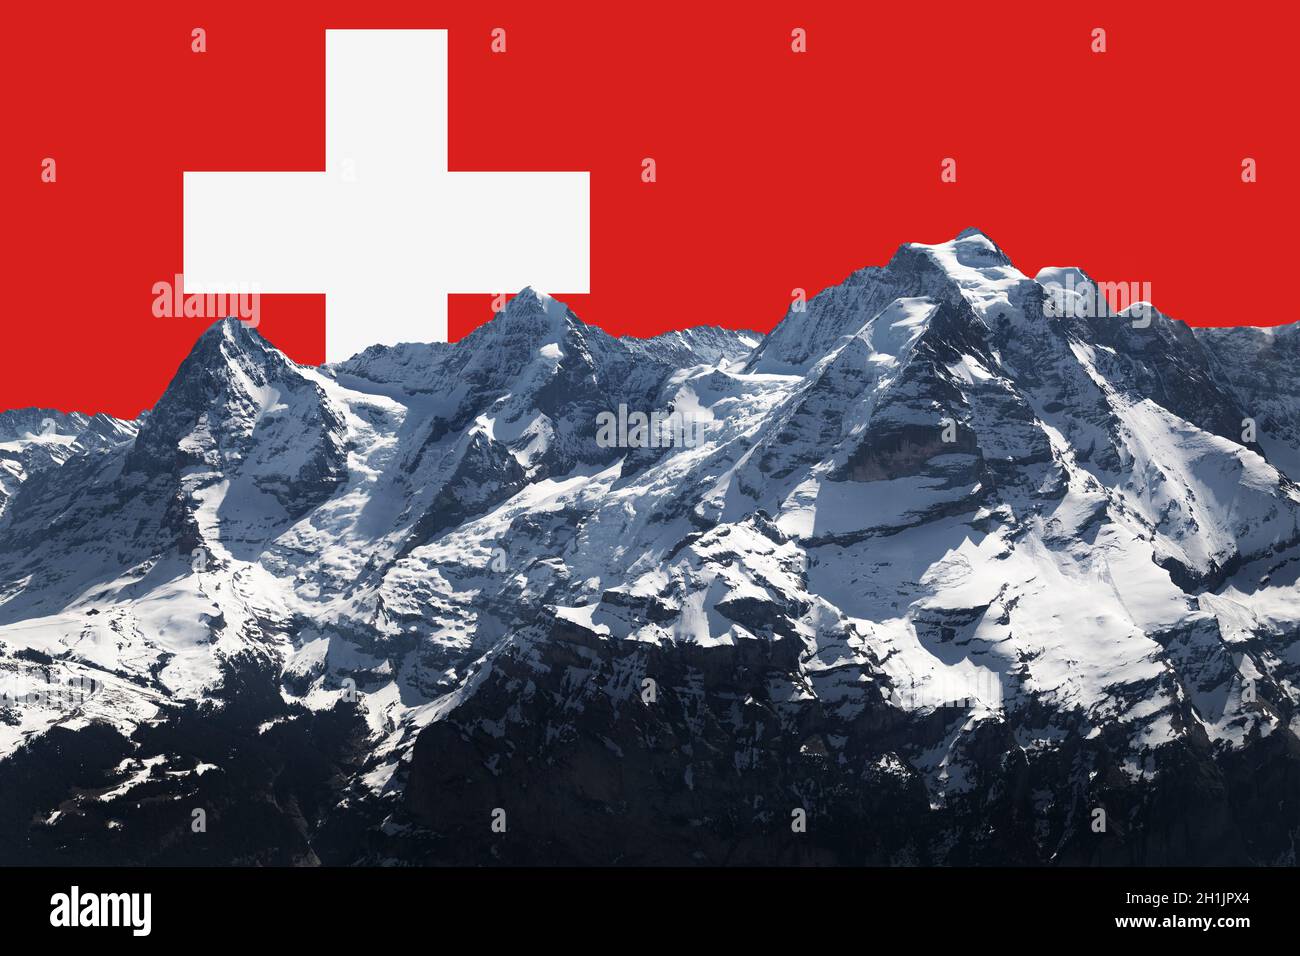 chaîne de montagnes eiger monk et jungfrau dans les alpes suisses, drapeau suisse comme grand symbole de croix rouge et blanche dans le ciel en arrière-plan, composition photo Banque D'Images